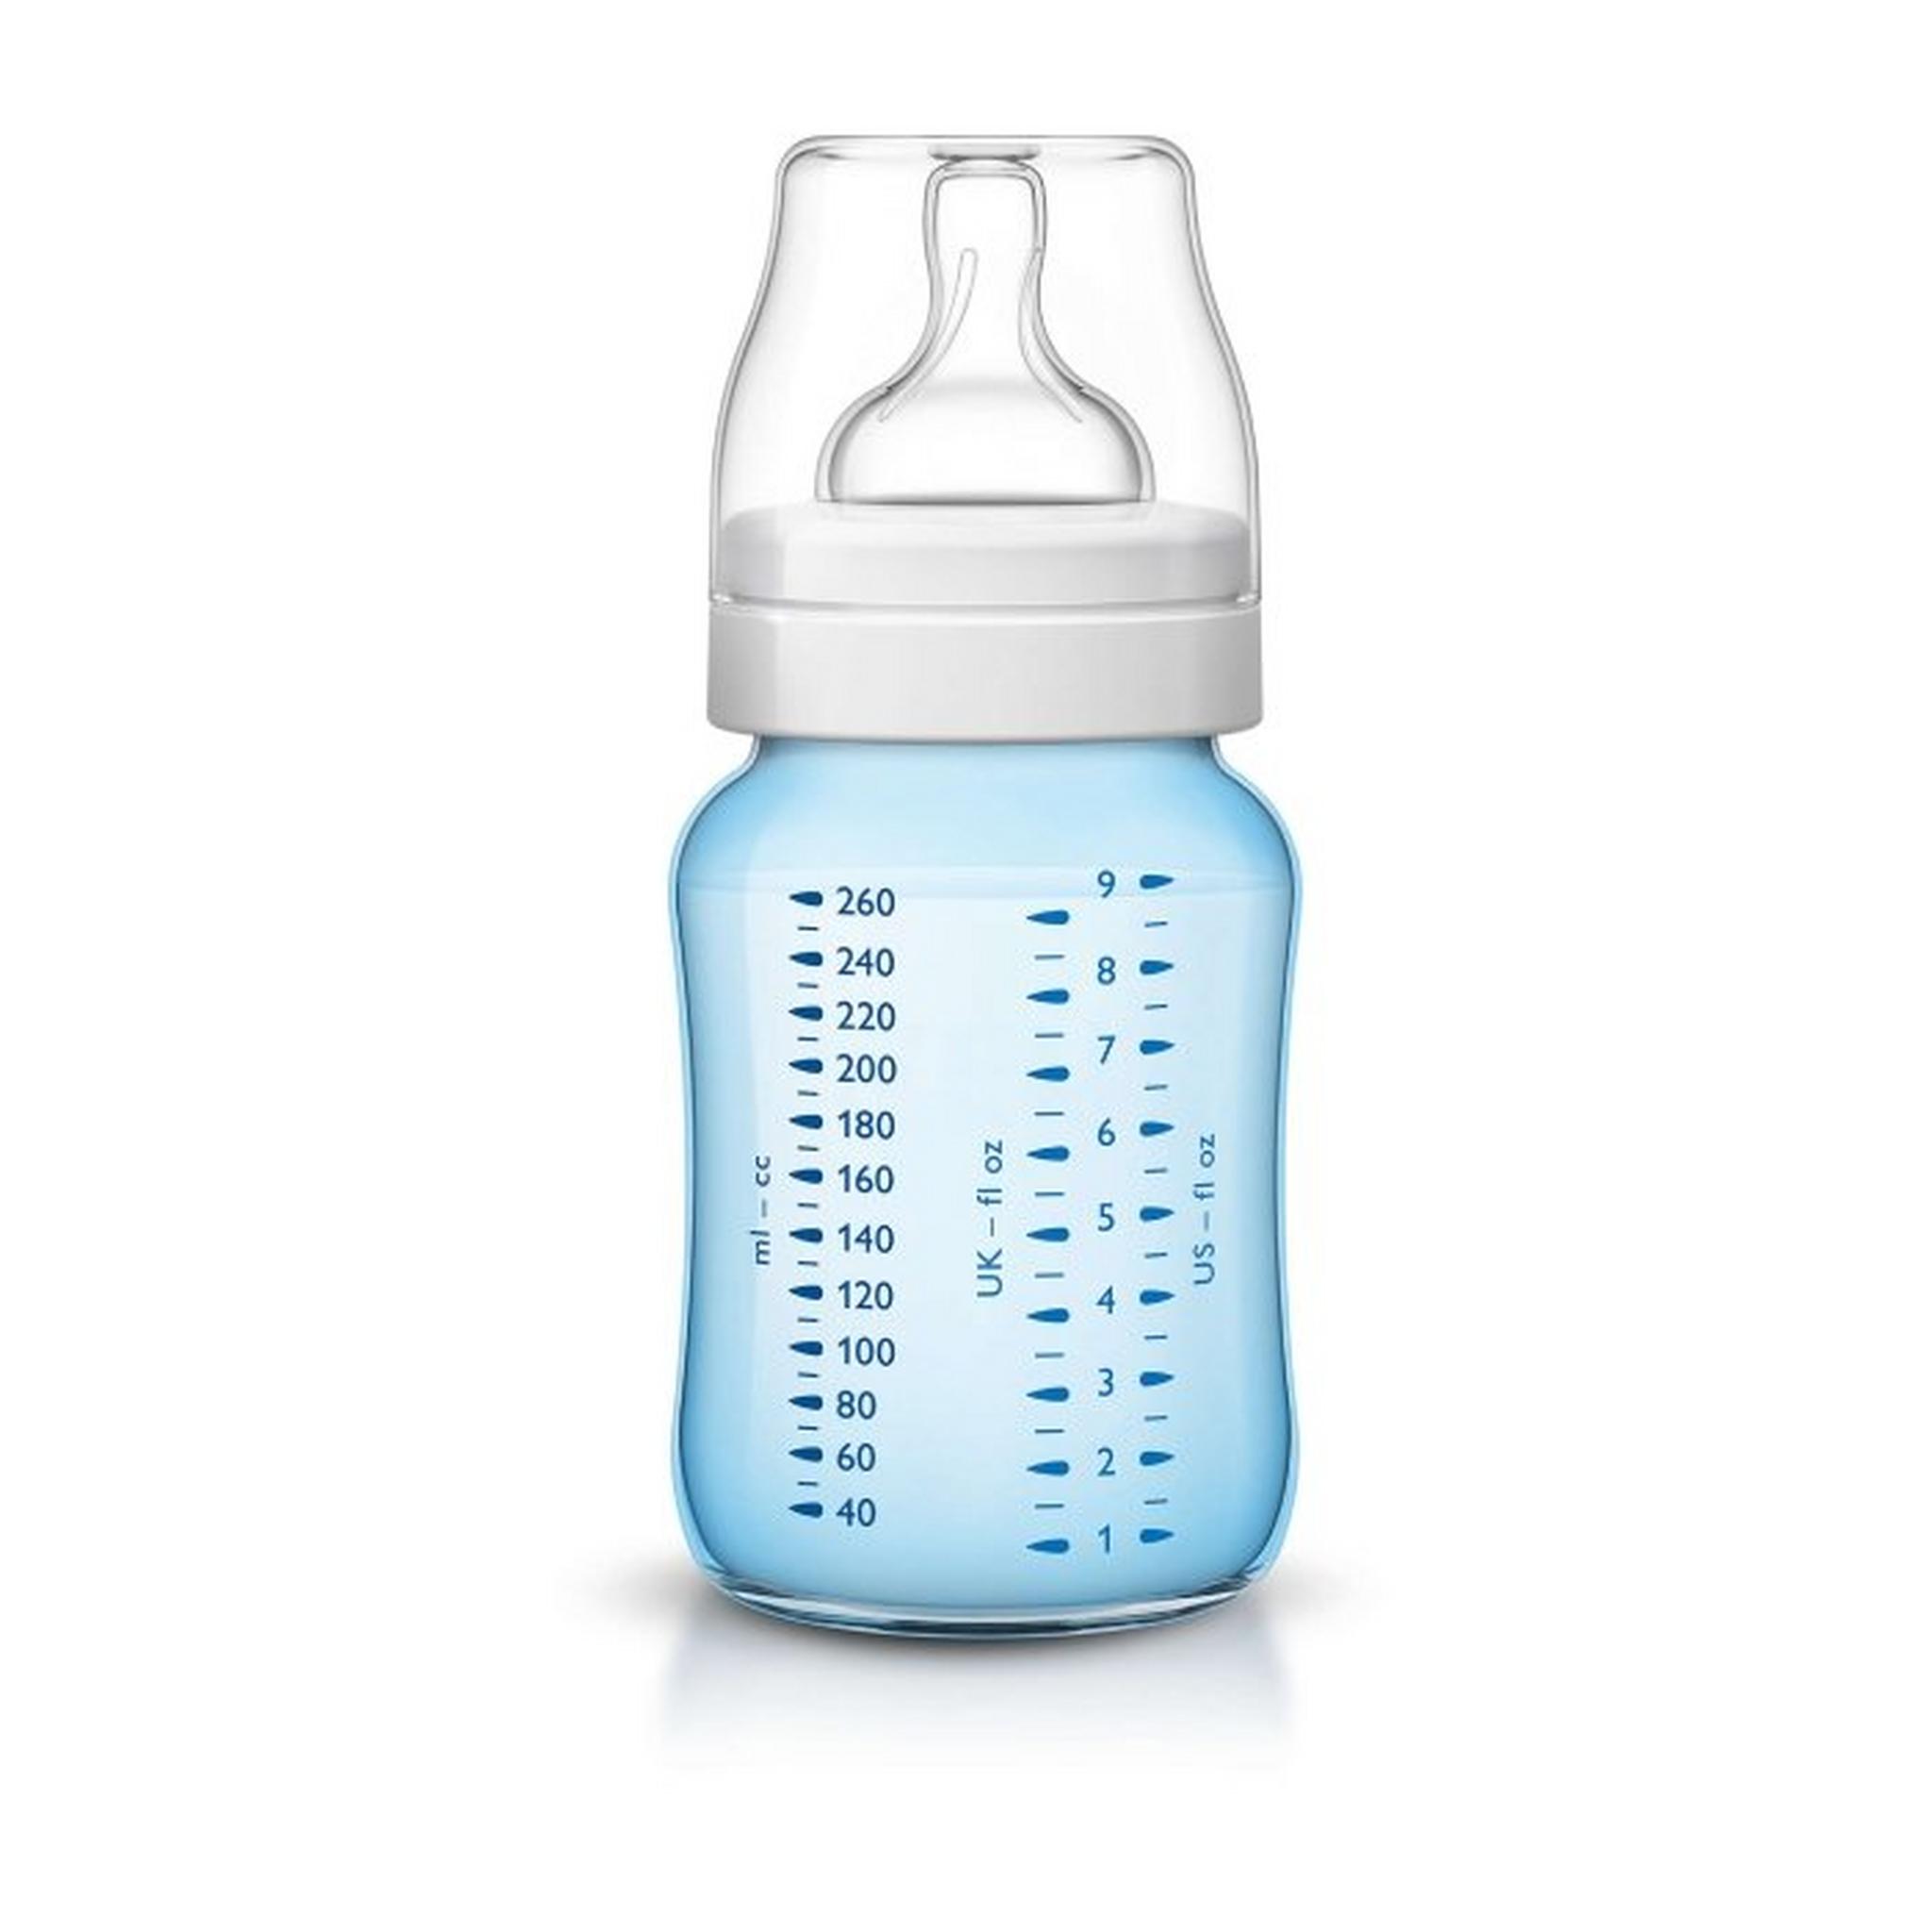 زجاجة الرضاعة كلاسيك بلس 260 مل من فيليبس ايفينت- أزرق - قطعتين